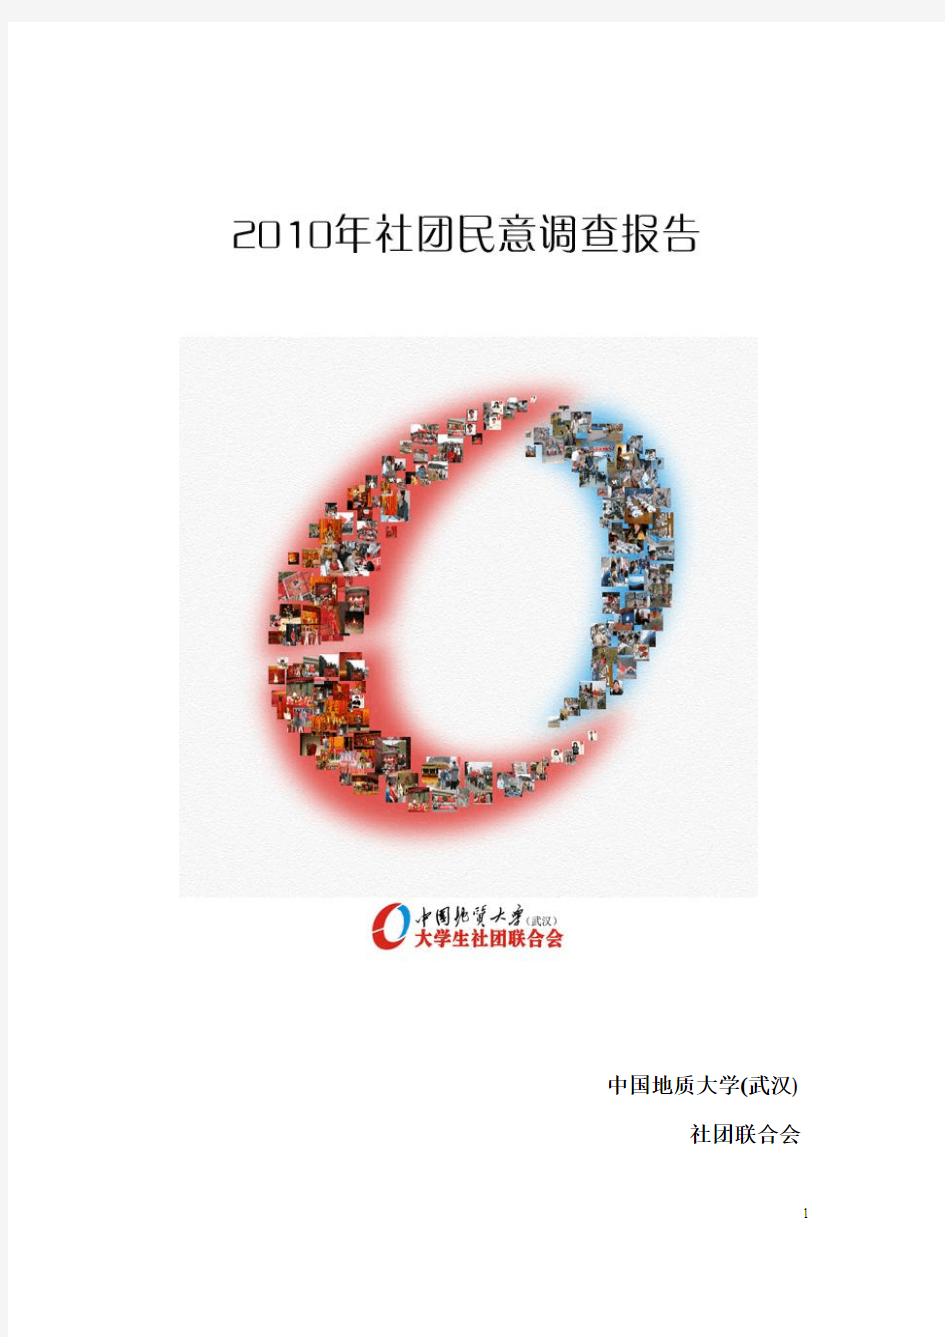 中国地质大学2010年社团民意调查报告